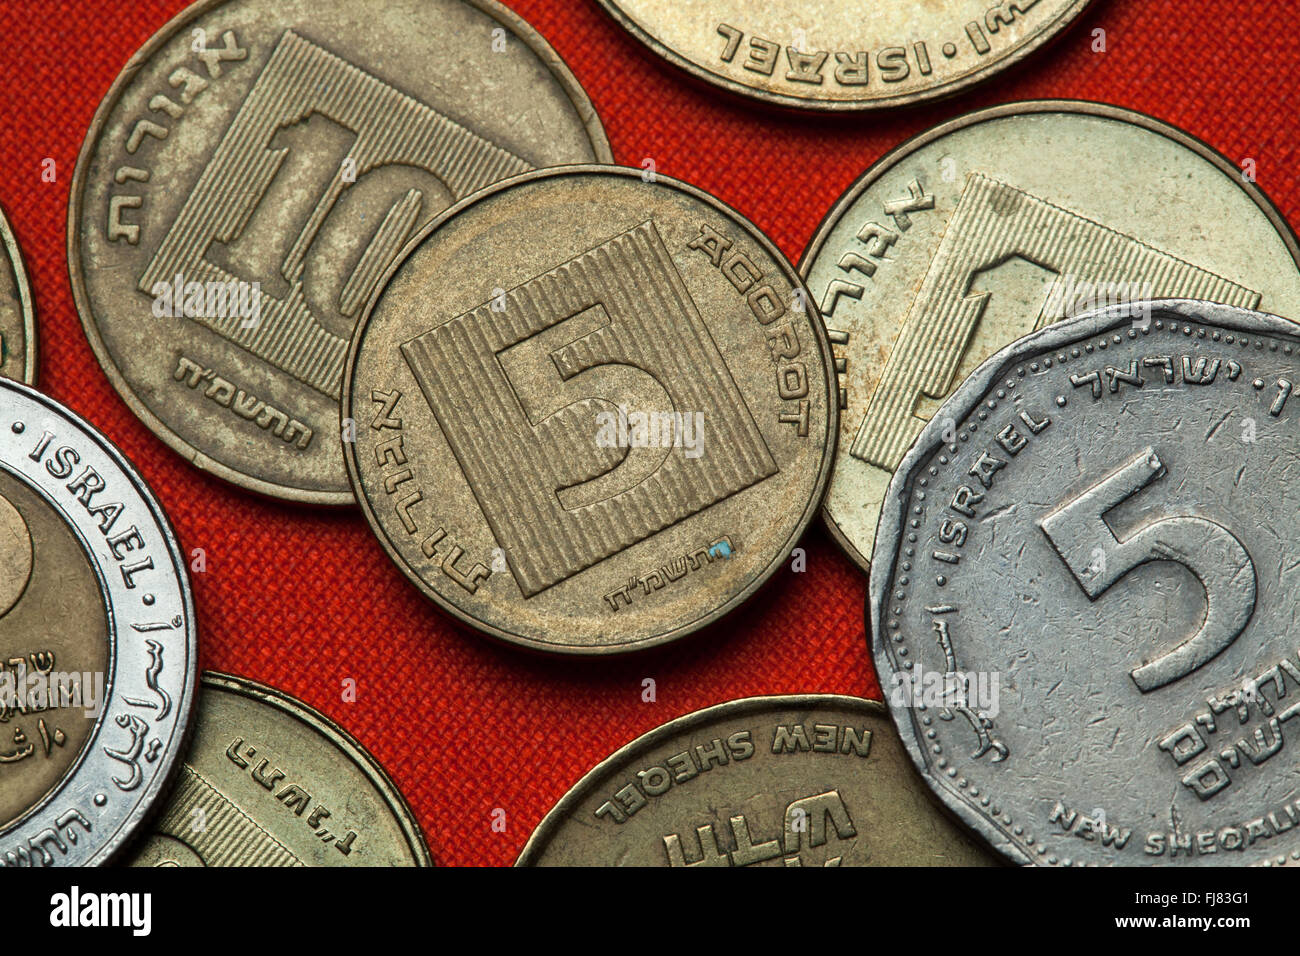 5 Israelischer Schekel-Münze Auf Weißem Hintergrund Lizenzfreie Fotos,  Bilder und Stock Fotografie. Image 20550426.